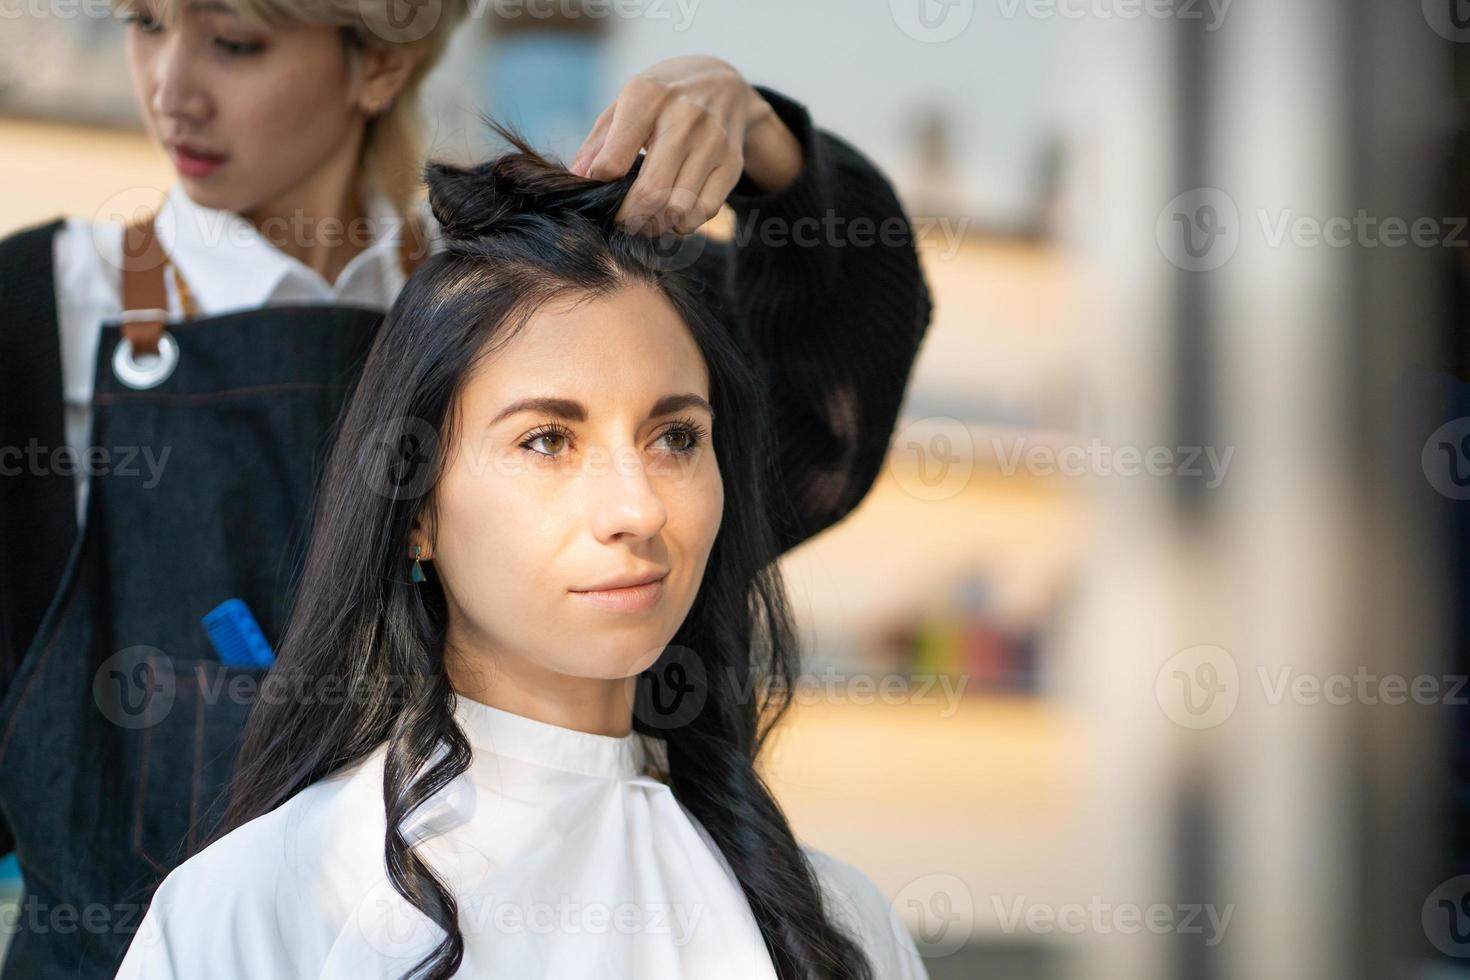 mulheres caucasianas com cabelo elegante enquanto cortam o cabelo e usam máscara facial cirúrgica enquanto estilizam o cabelo para o cliente. ocupação profissional, serviço de beleza e moda novo normal foto